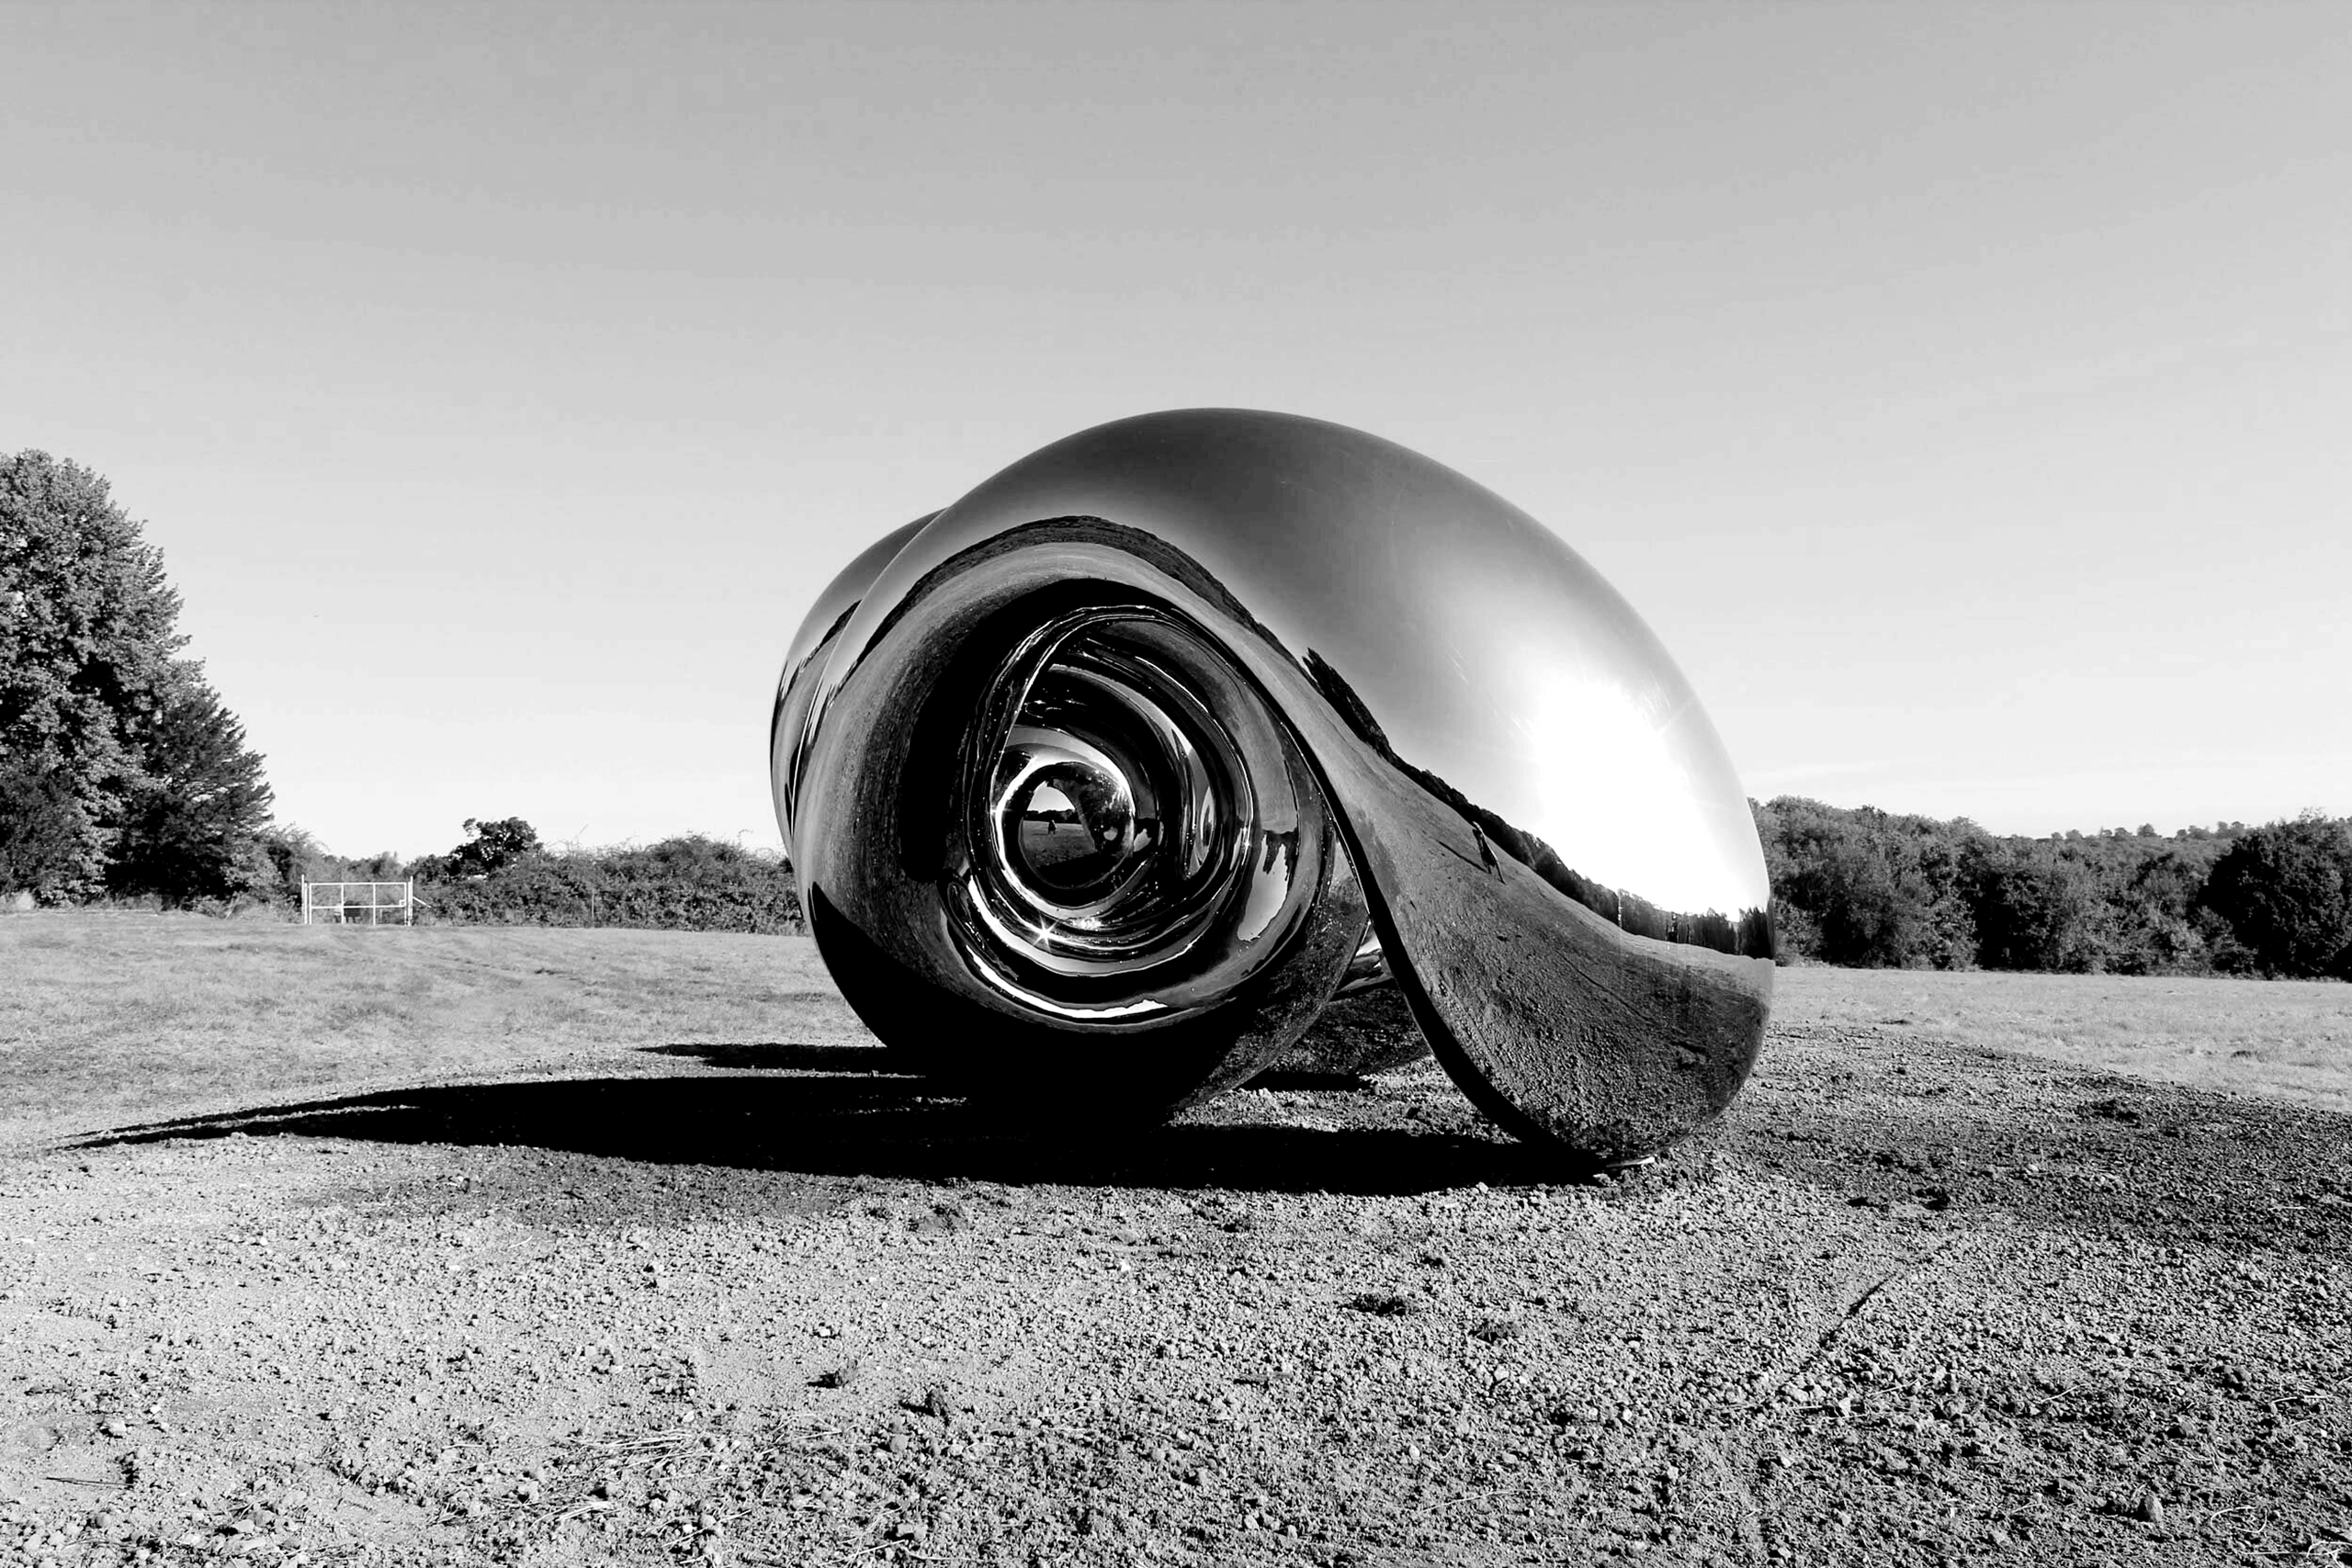 Mirror Stainless Steel Monumental Sculpture-Unwind